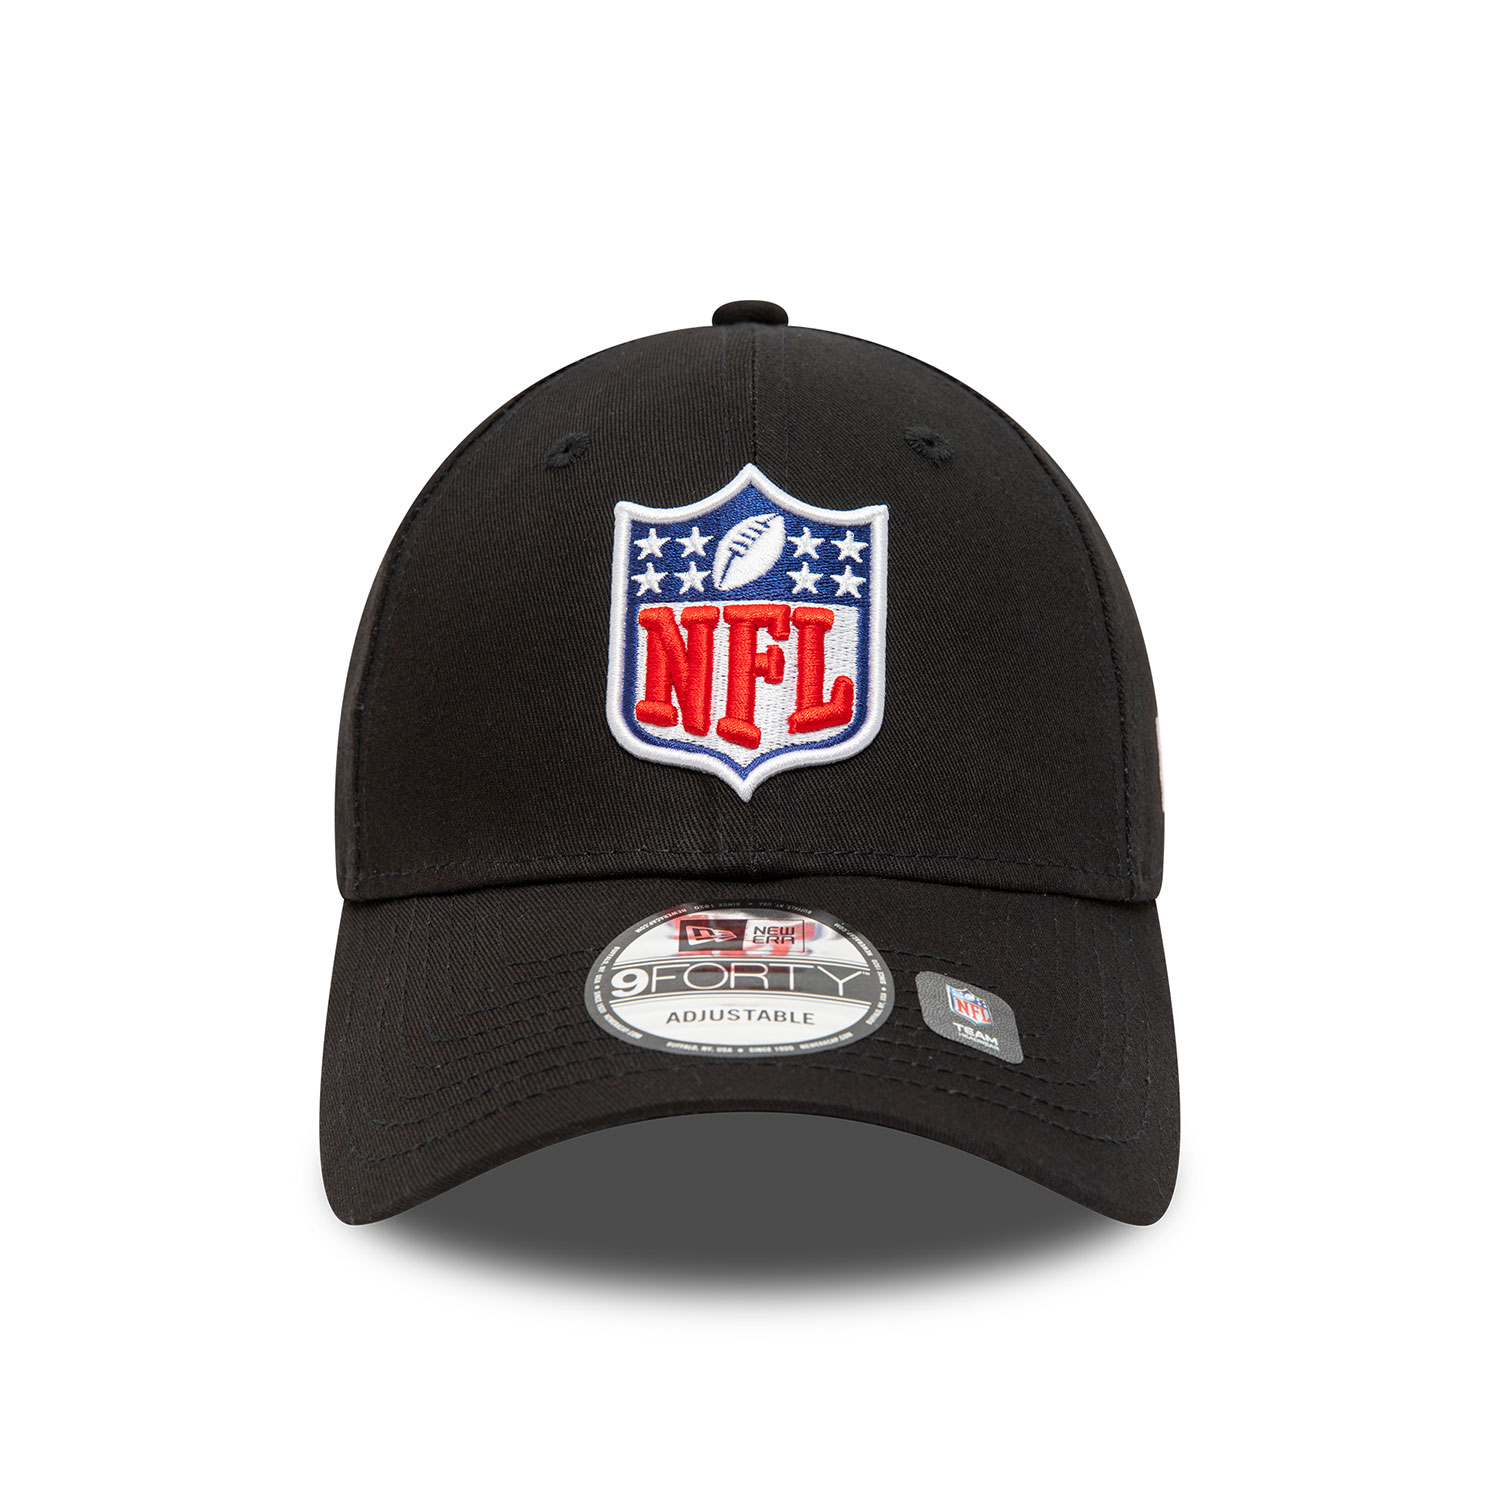 NFL Logo Shield Black 9FORTY Adjustable Cap